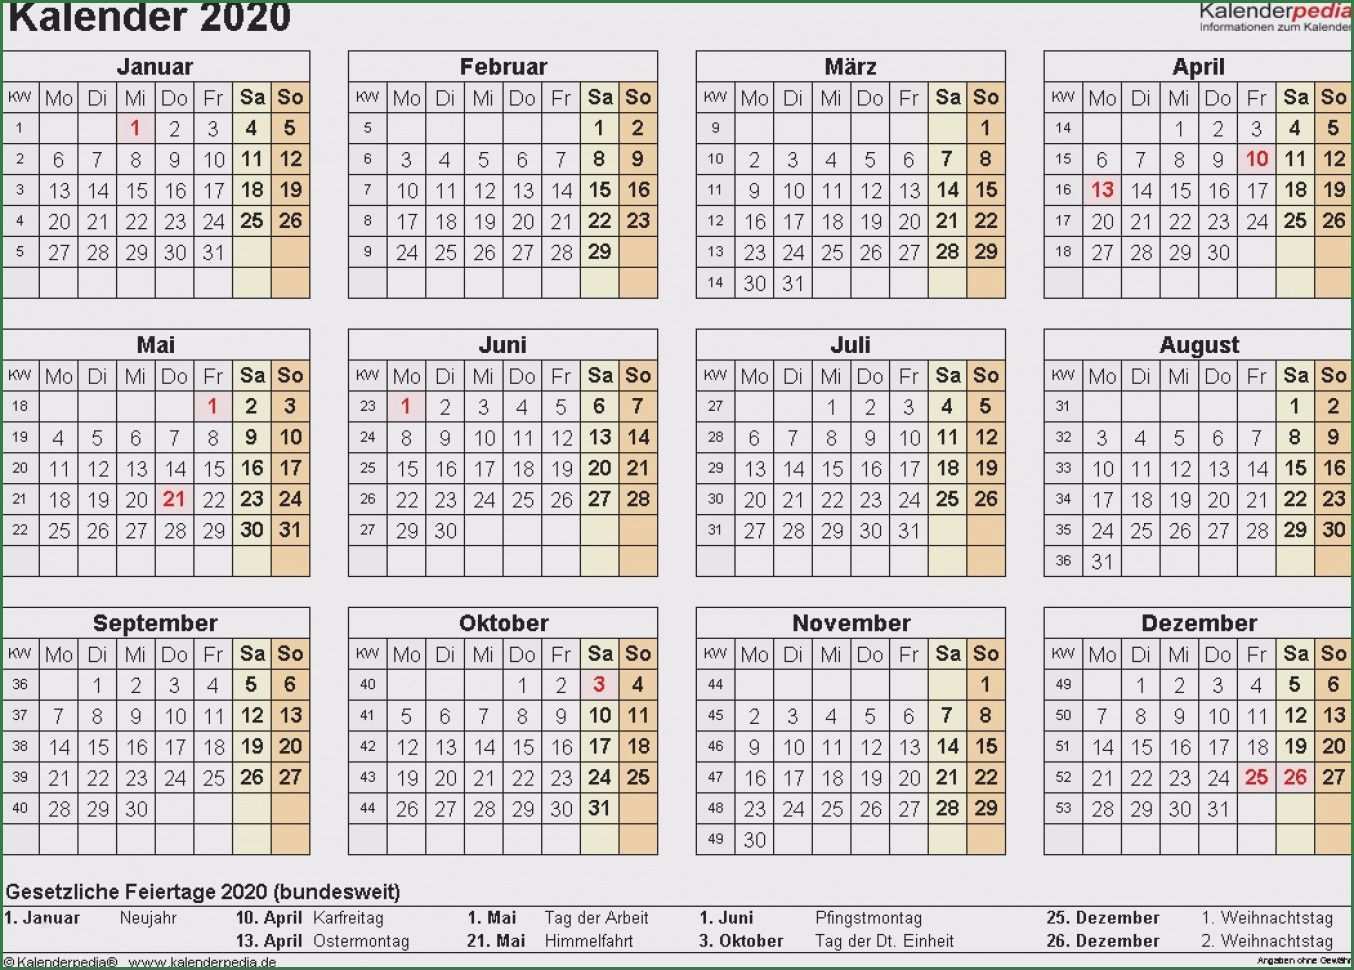 Atemberaubend Kalender 2016 Vorlage Indesign Sie Mochten Sofort Kopieren Kalender Vorlagen Kalender 2016 Indesign Vorlagen